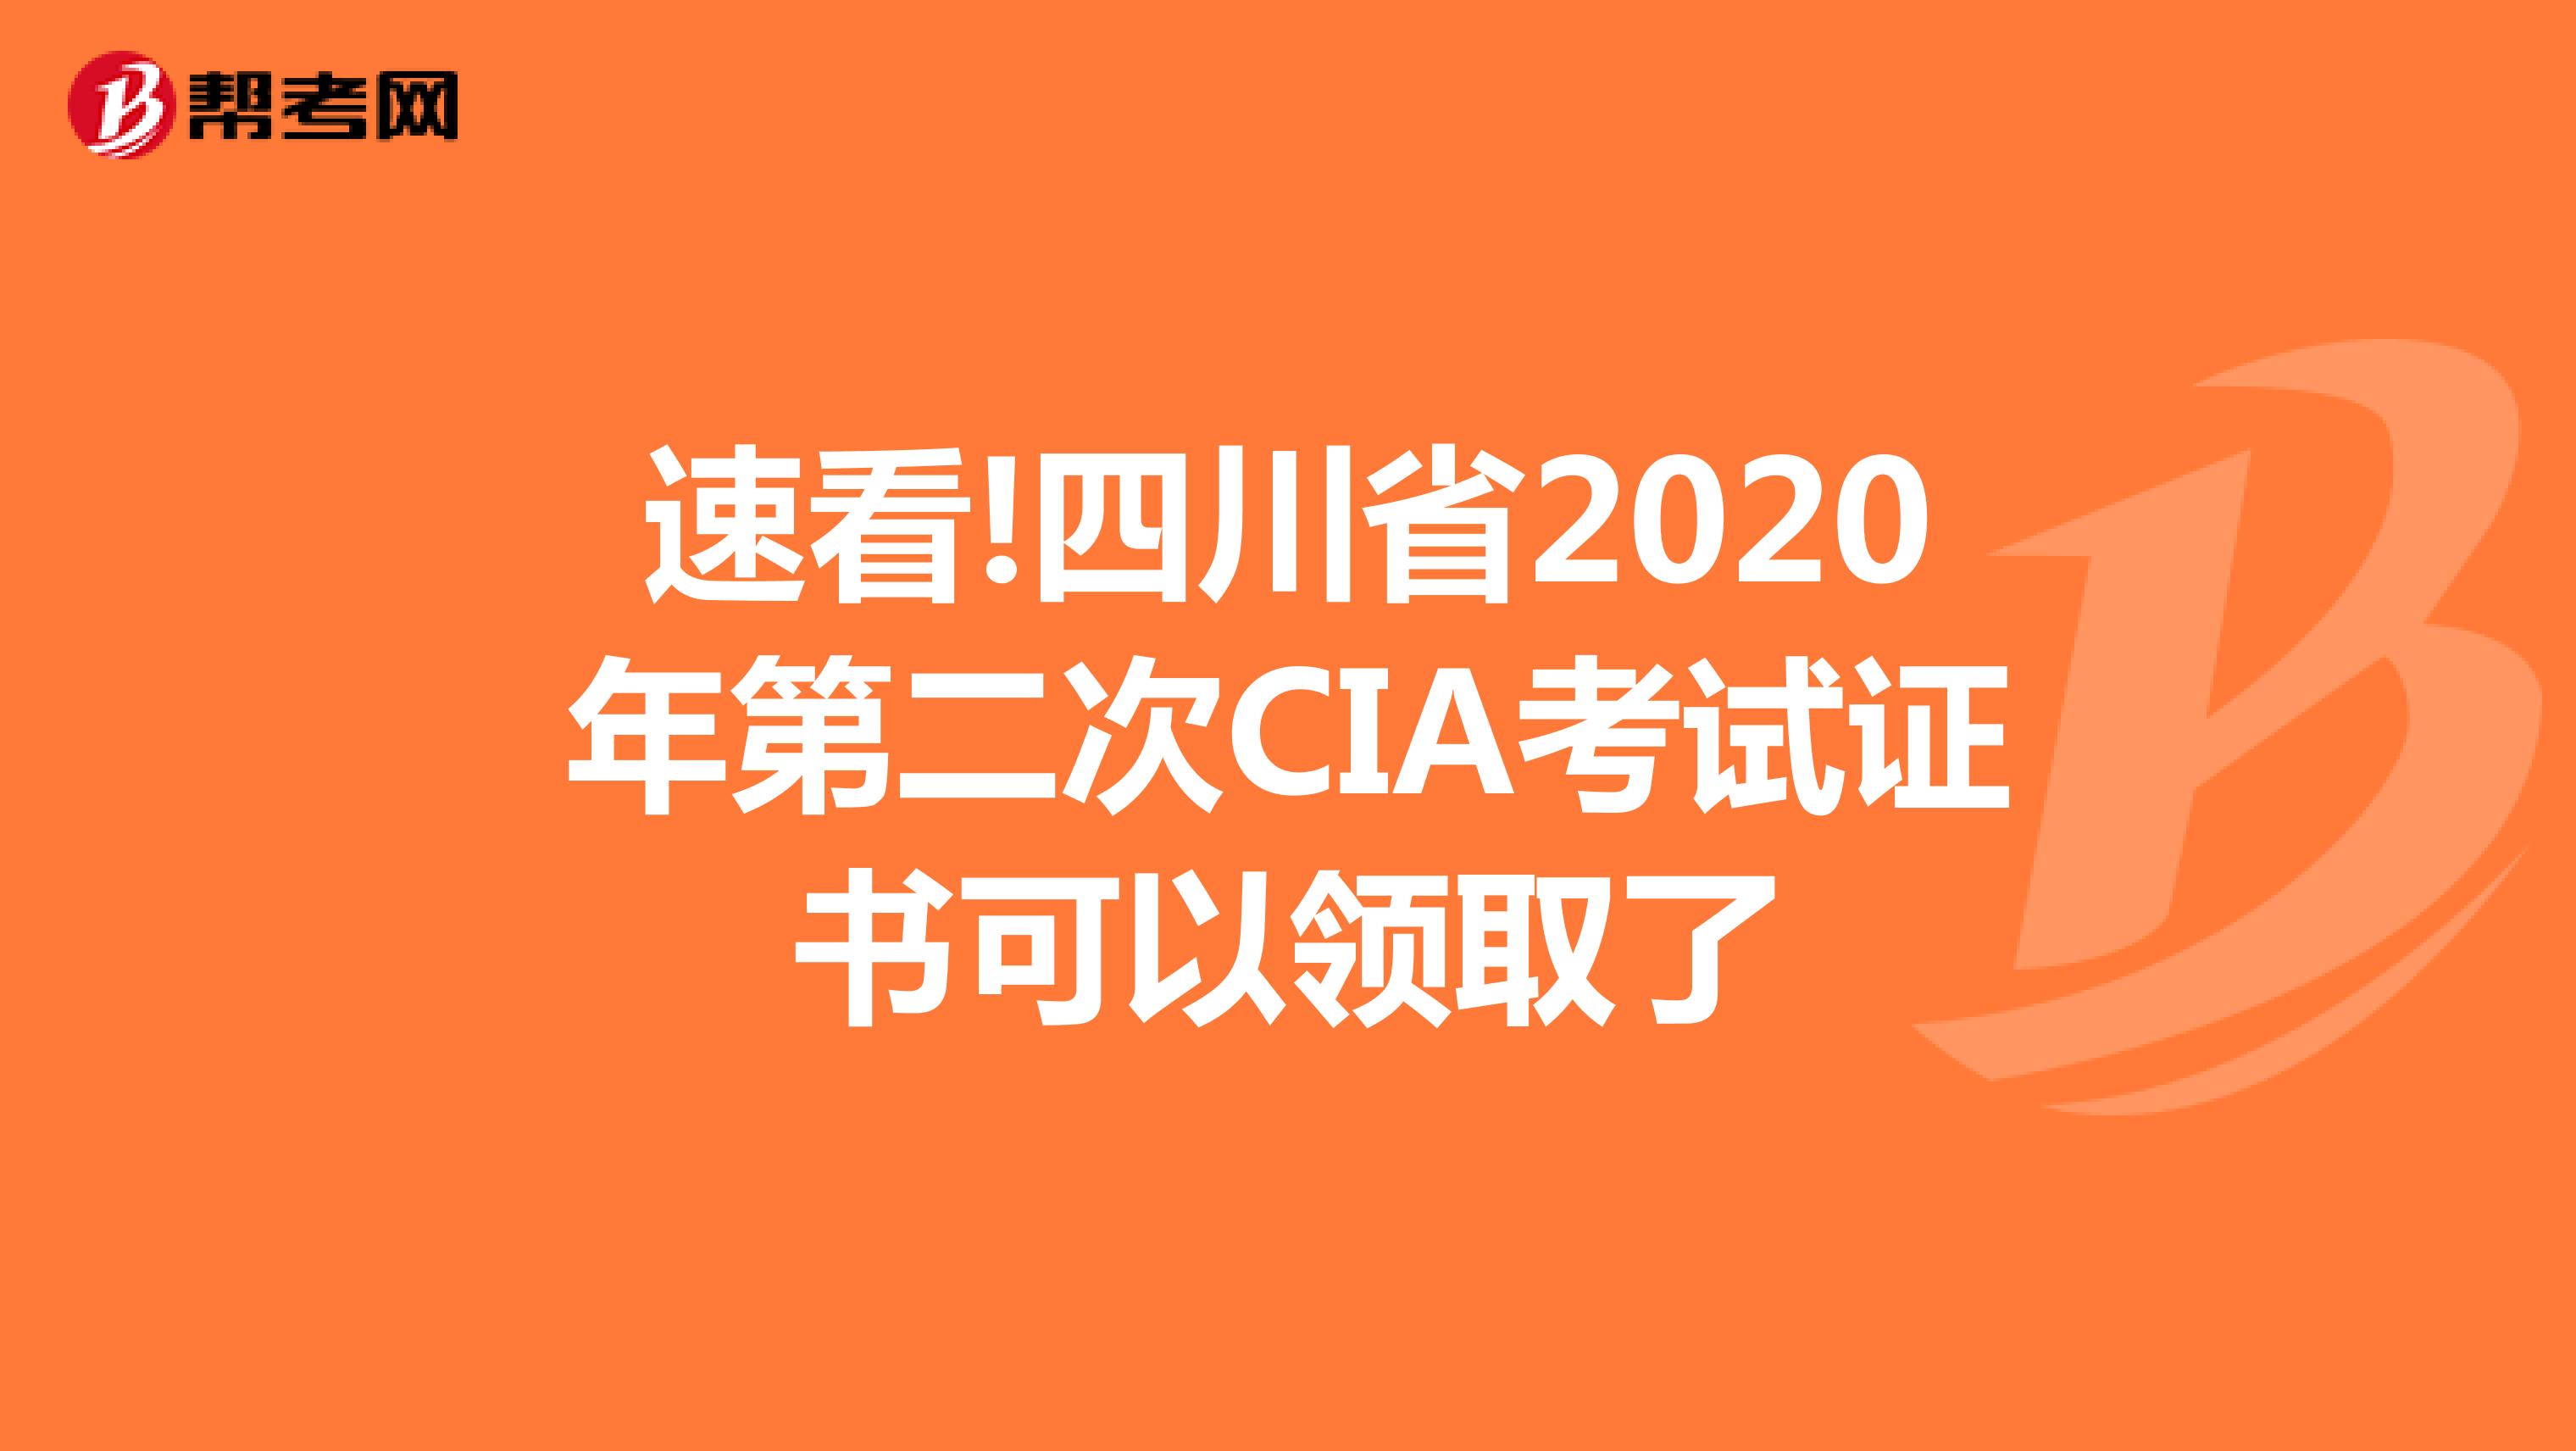 速看!四川省2020年第二次CIA考试证书可以领取了